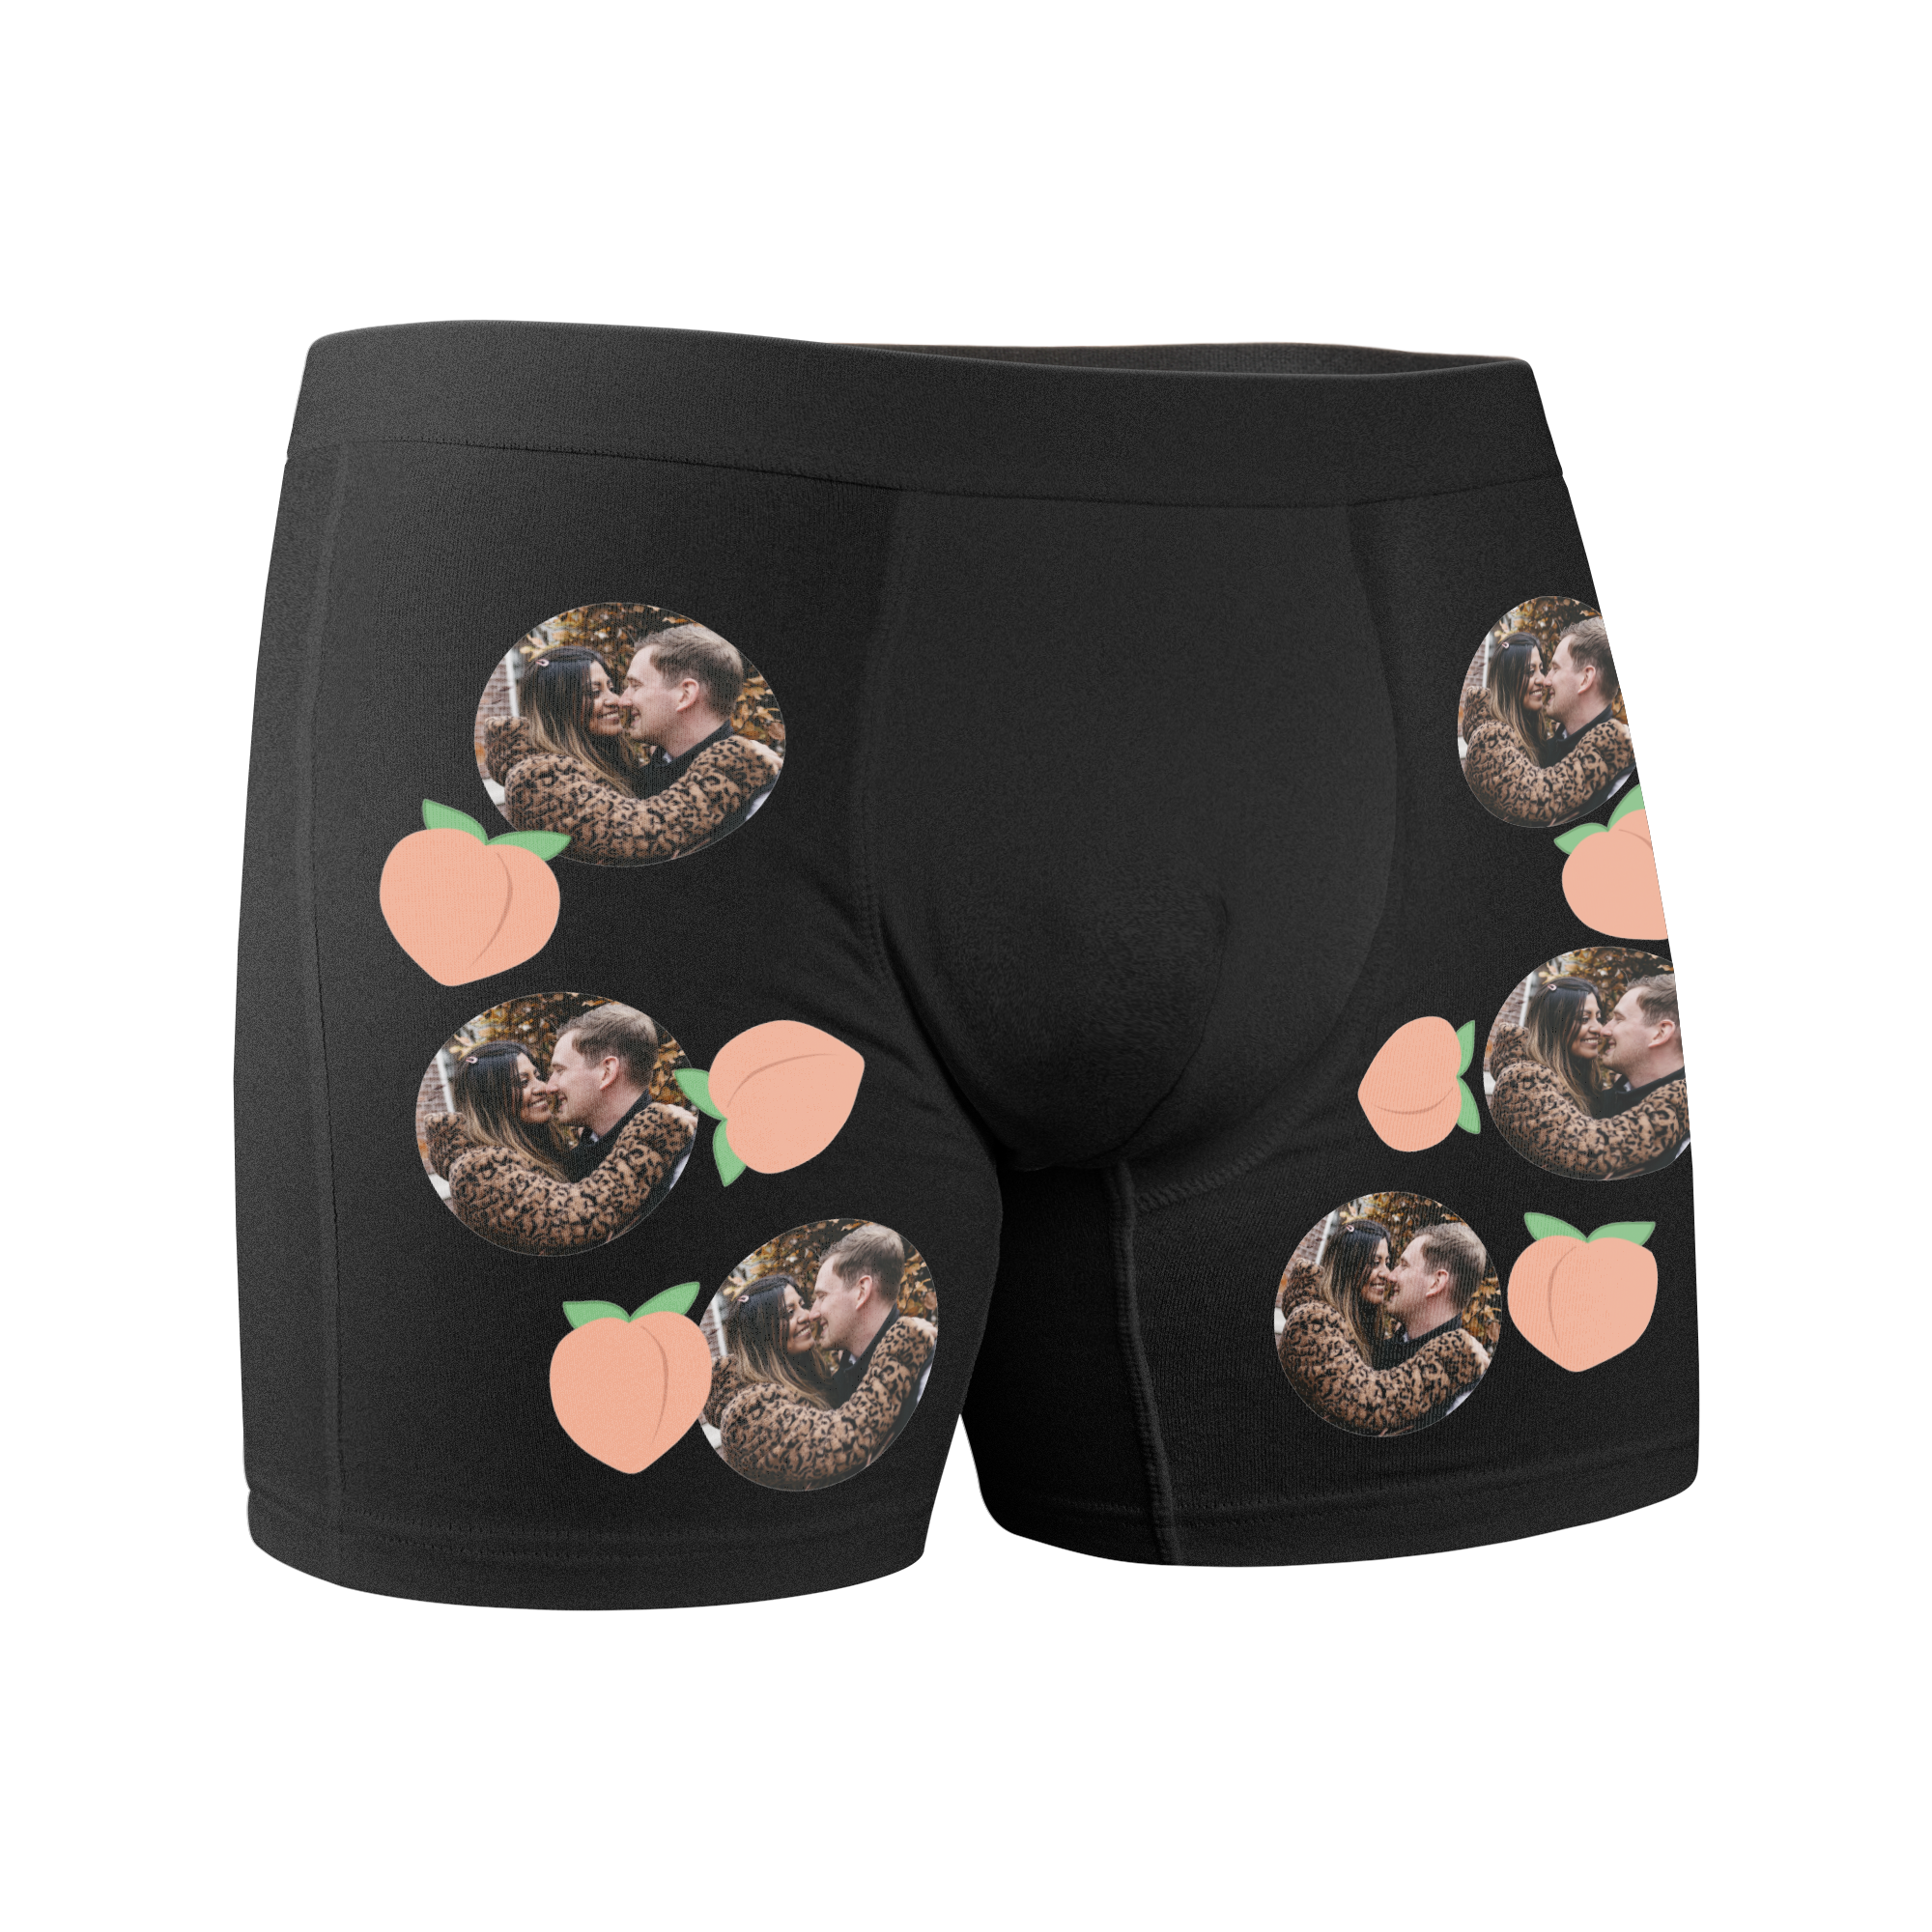 Underkläder - Boxershorts - L (namn)